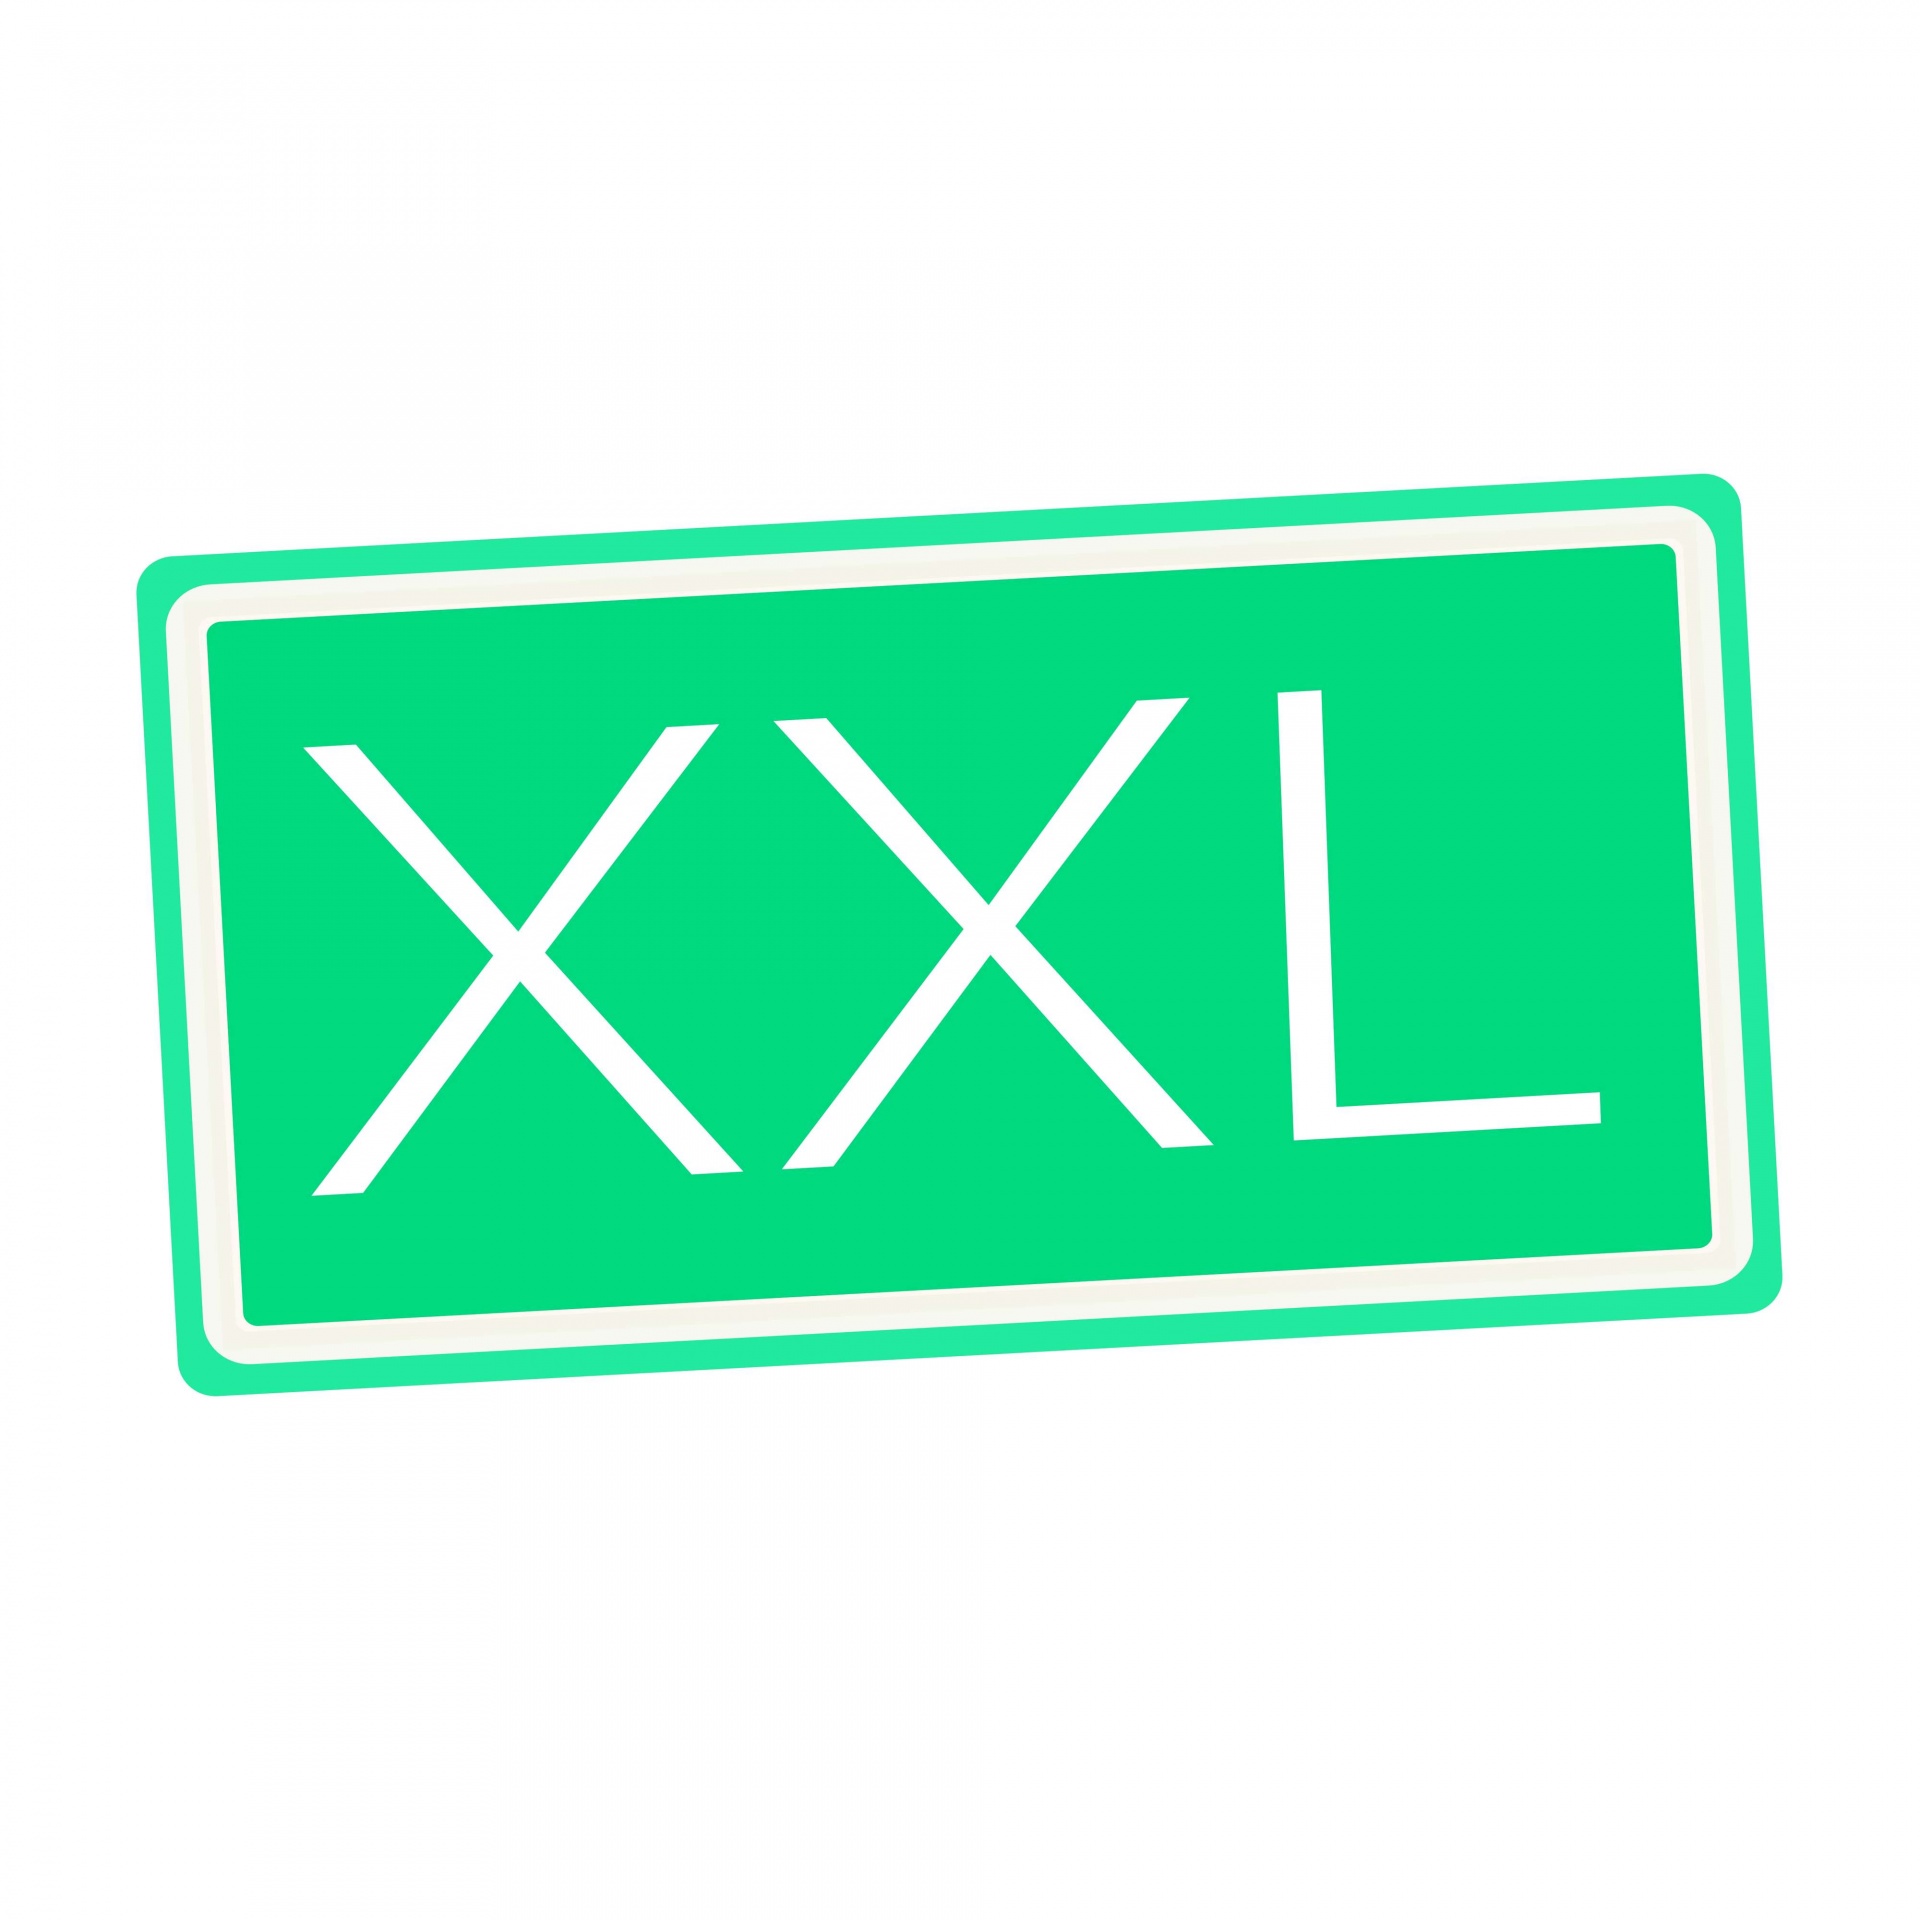 XXL White Stamp Text On Green